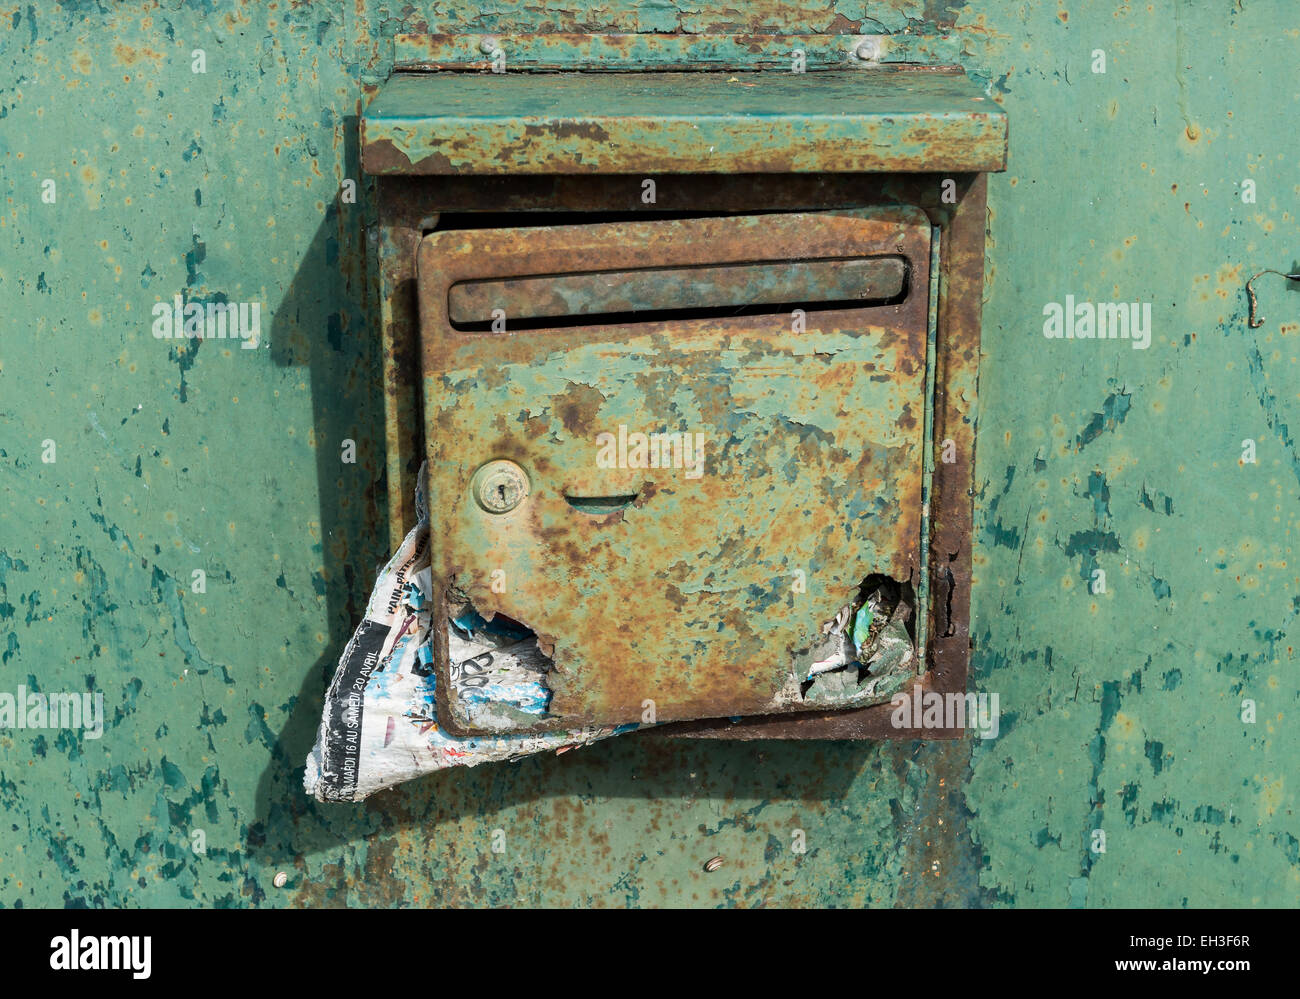 Ancienne boîte aux lettres verte avec de la rouille et un trou et sale courrier sur une porte métallique verte. Banque D'Images